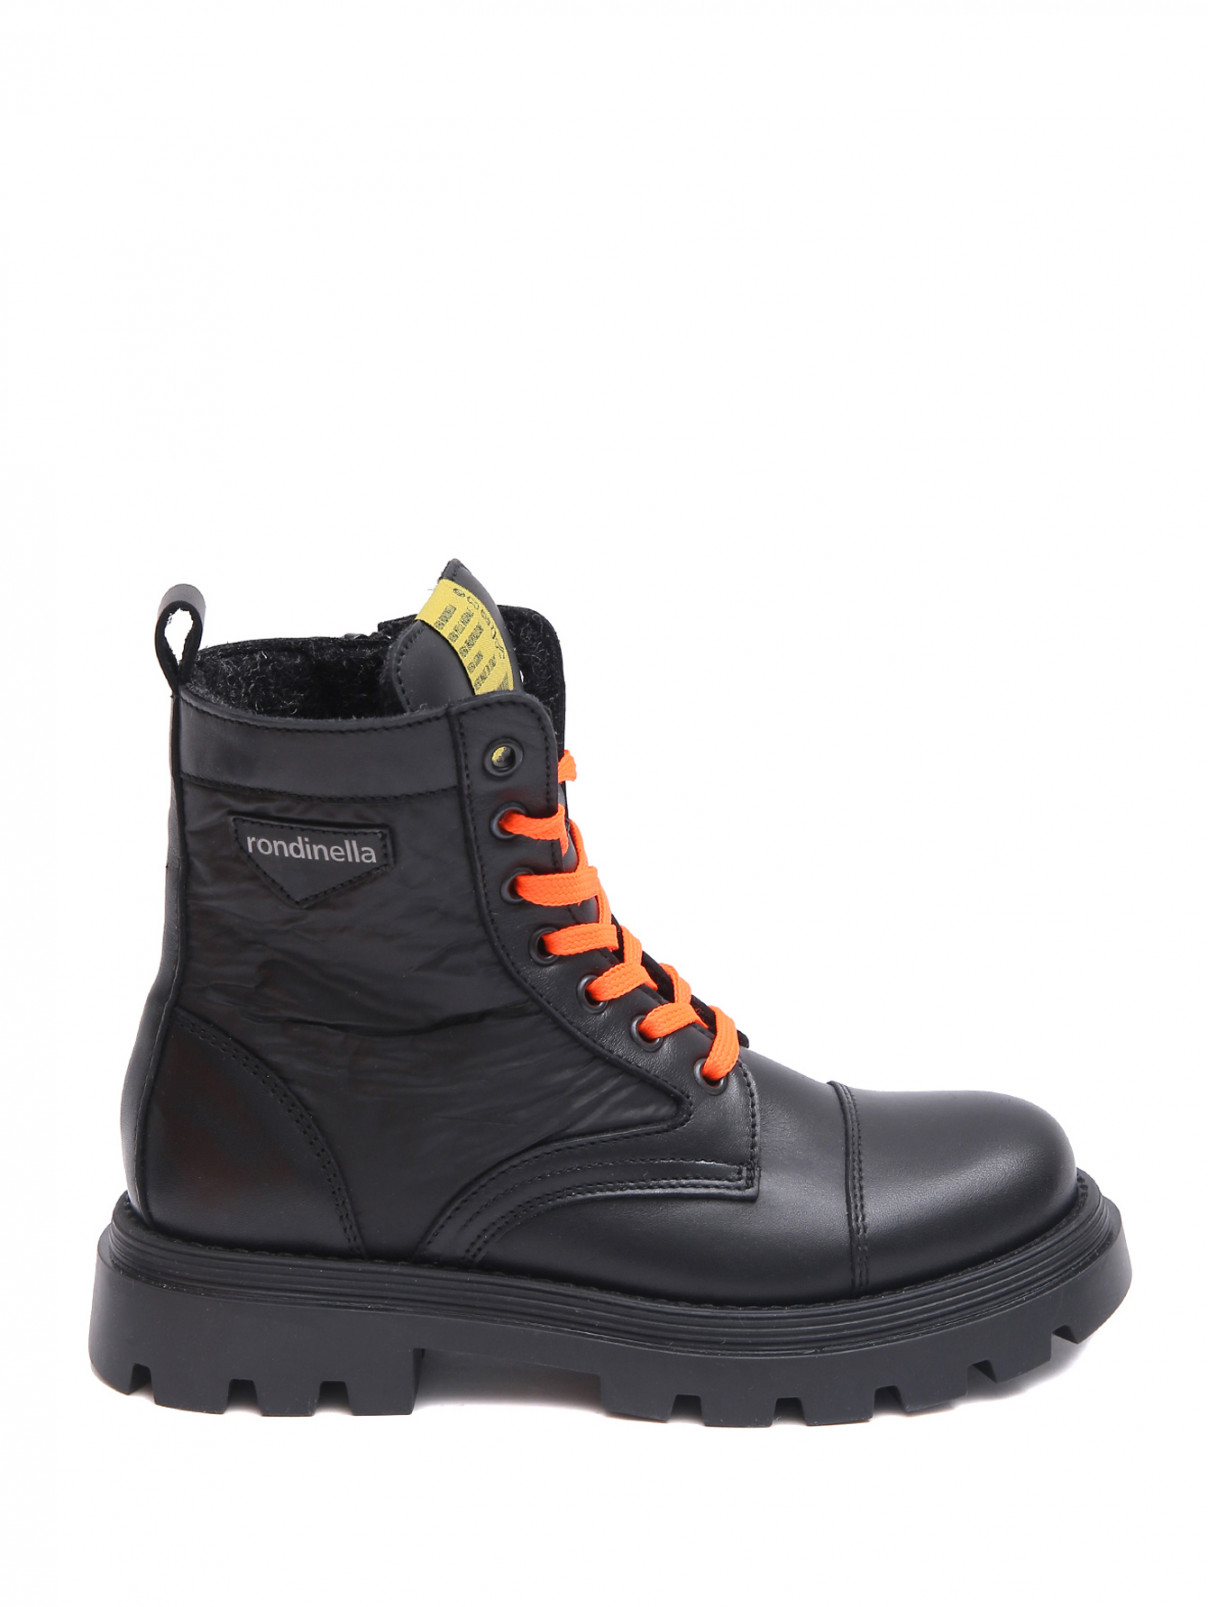 Ботинки с акцентными шнурками Rondinella  –  Обтравка1  – Цвет:  Черный